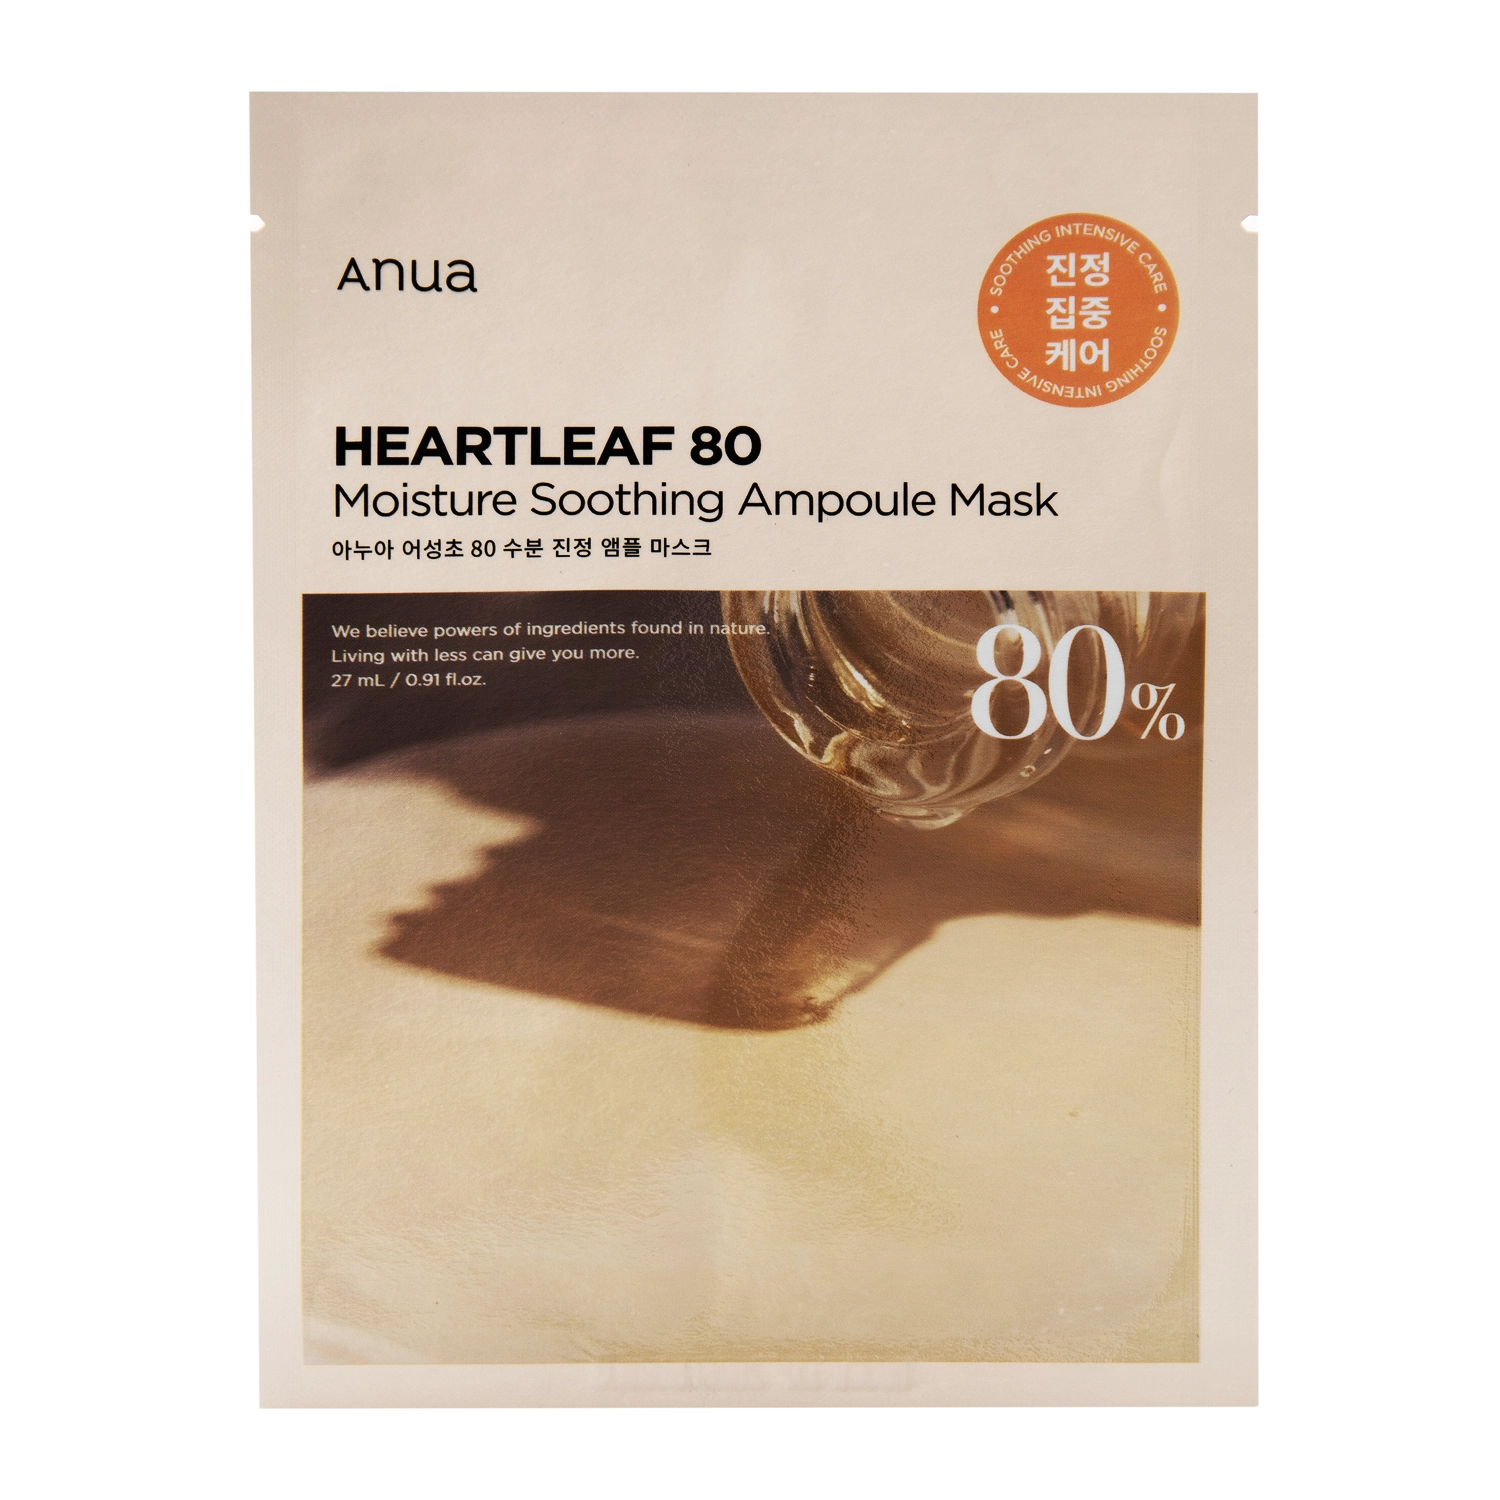 Anua - Heartleaf 80 Moisture Soothing Ampoule Mask - Nyugtató Arcmaszk 80% Ezüst Szirtőr Kivonattal - 1db/27ml